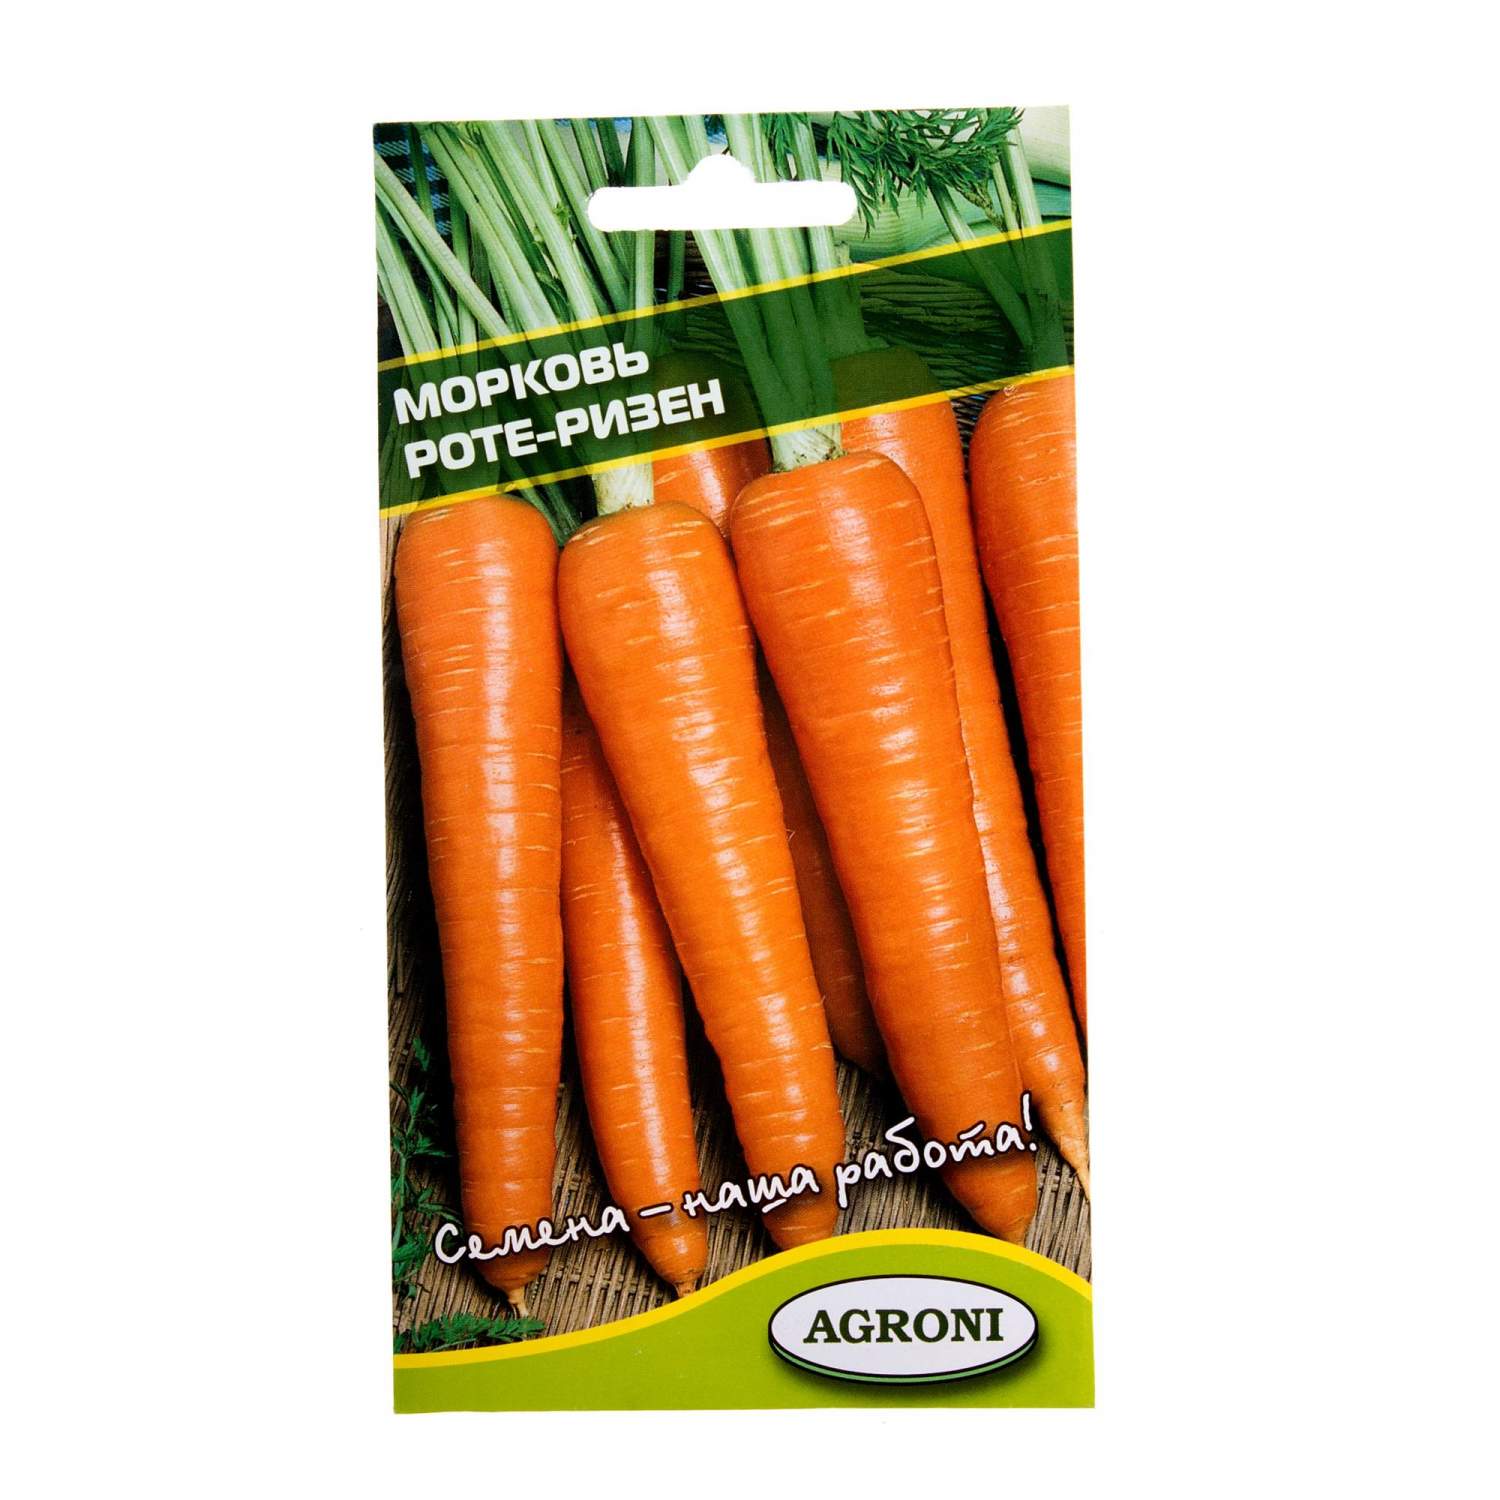 Морковь Роте Ризен описание сорта, фото, отзывы, посадка и уход